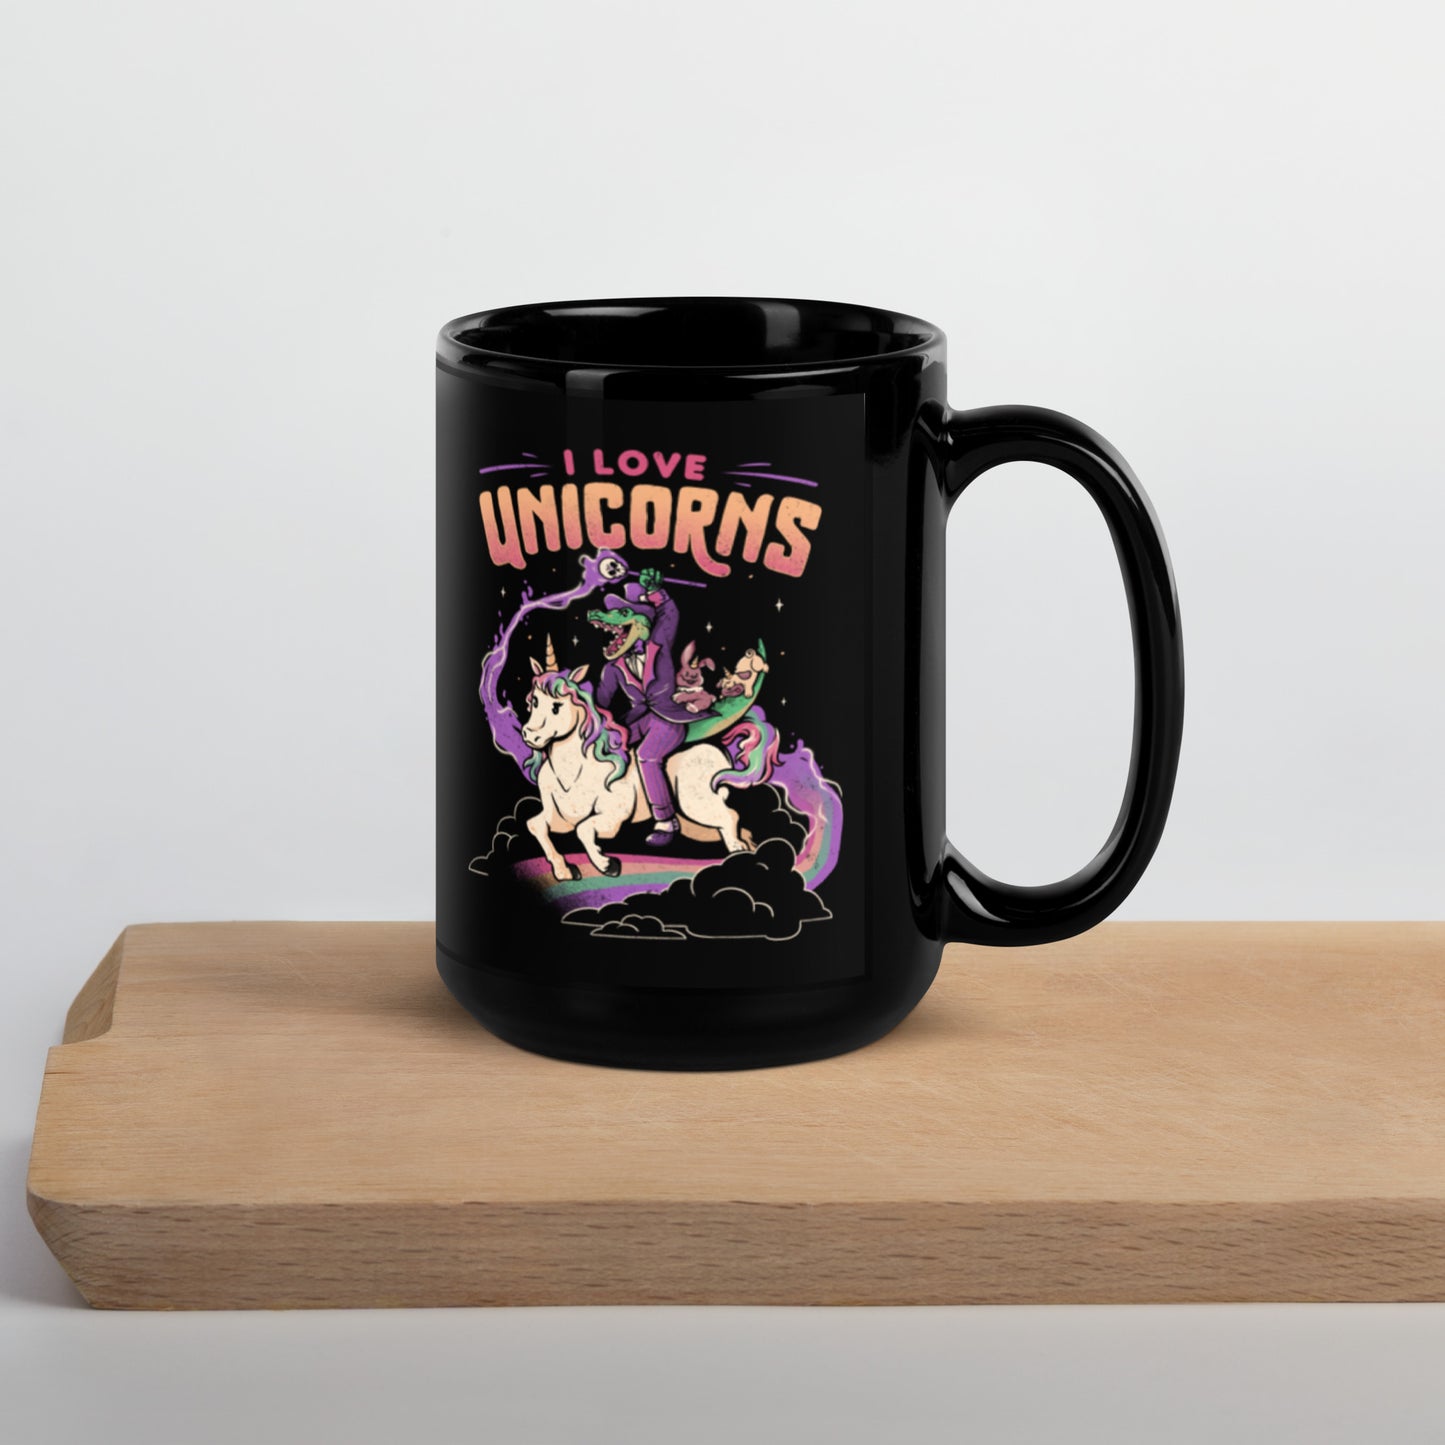 I Love Unicorns - Mug